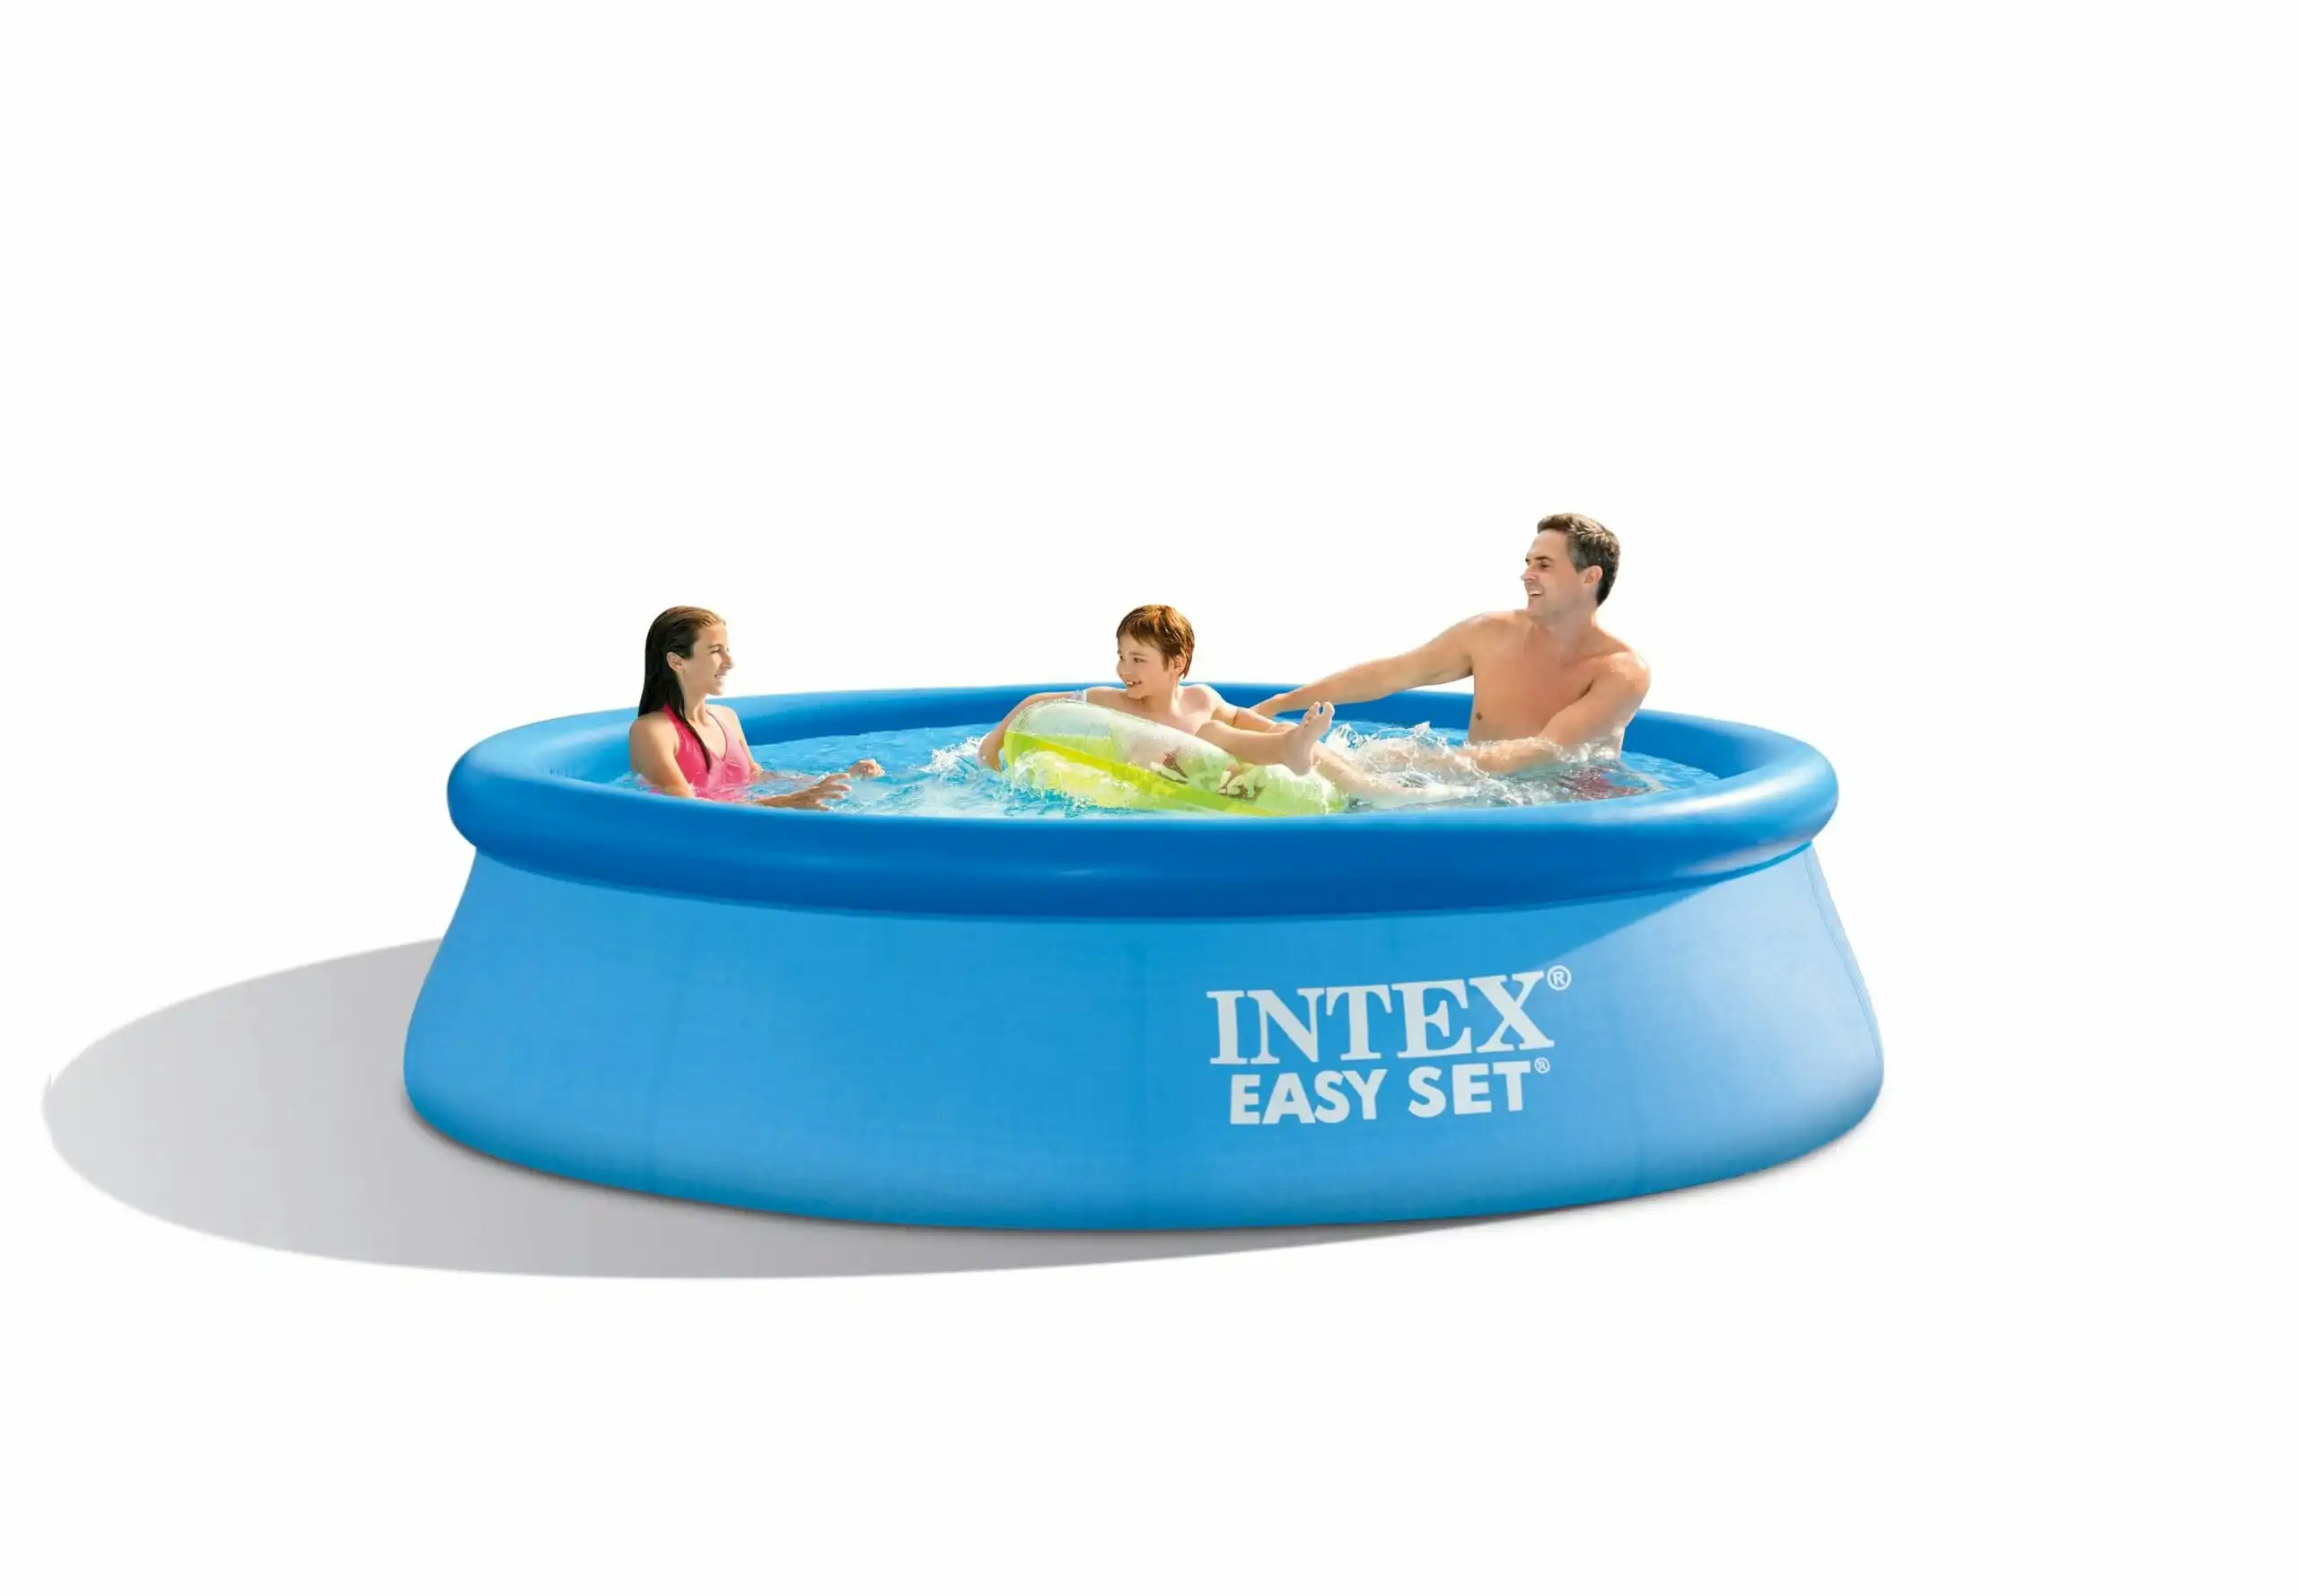 Intex Easy Set Pool Package 10' 3.05M X 76CM 28122